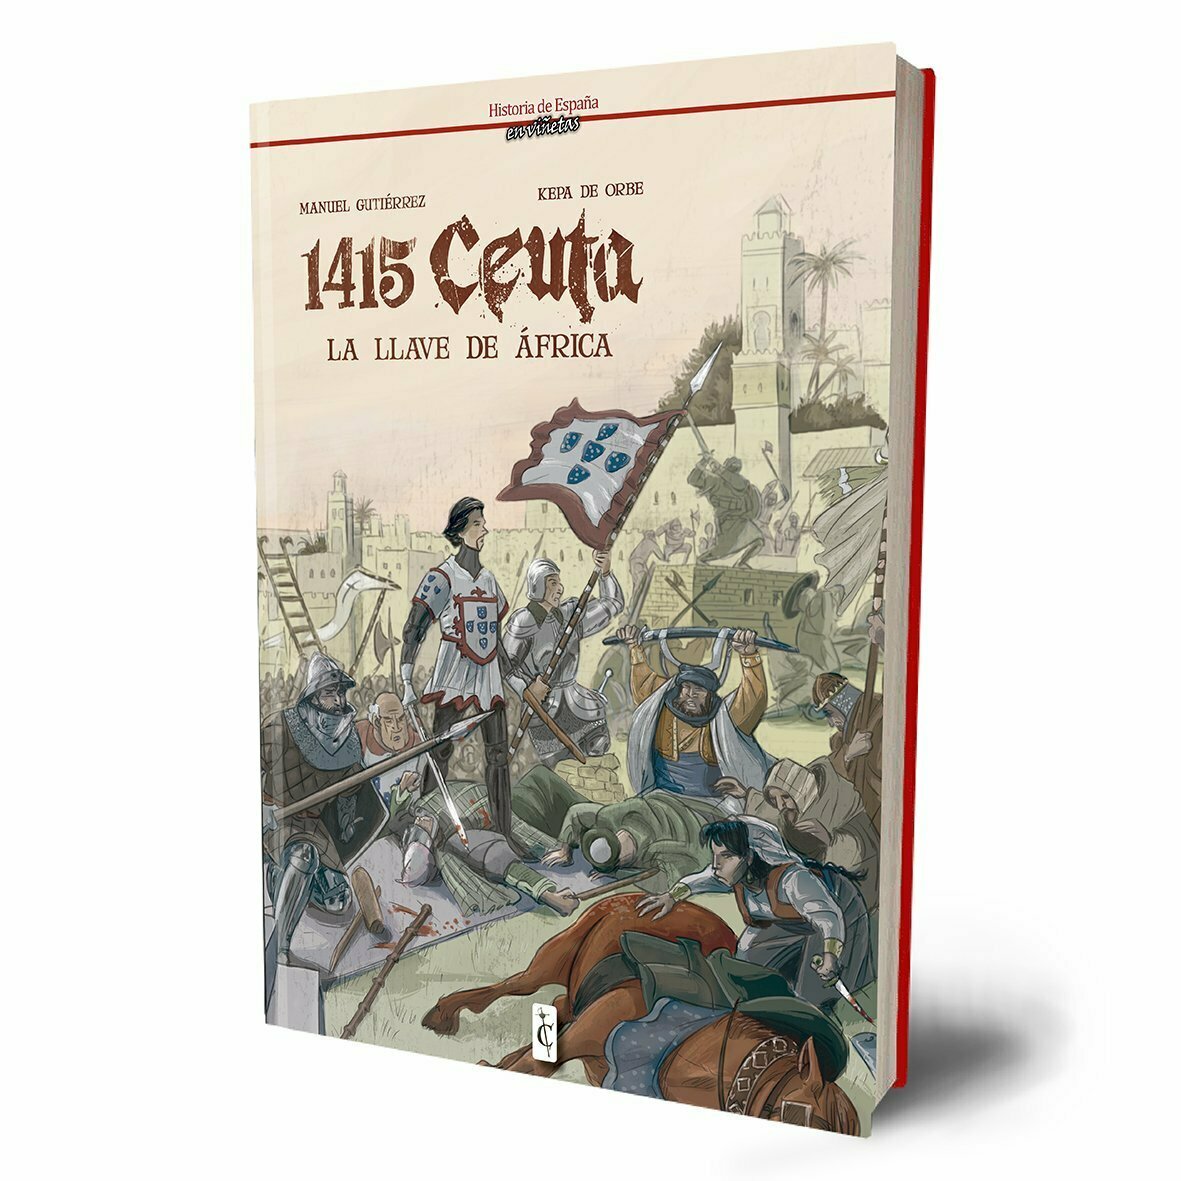 1415: Ceuta. La llave de África.